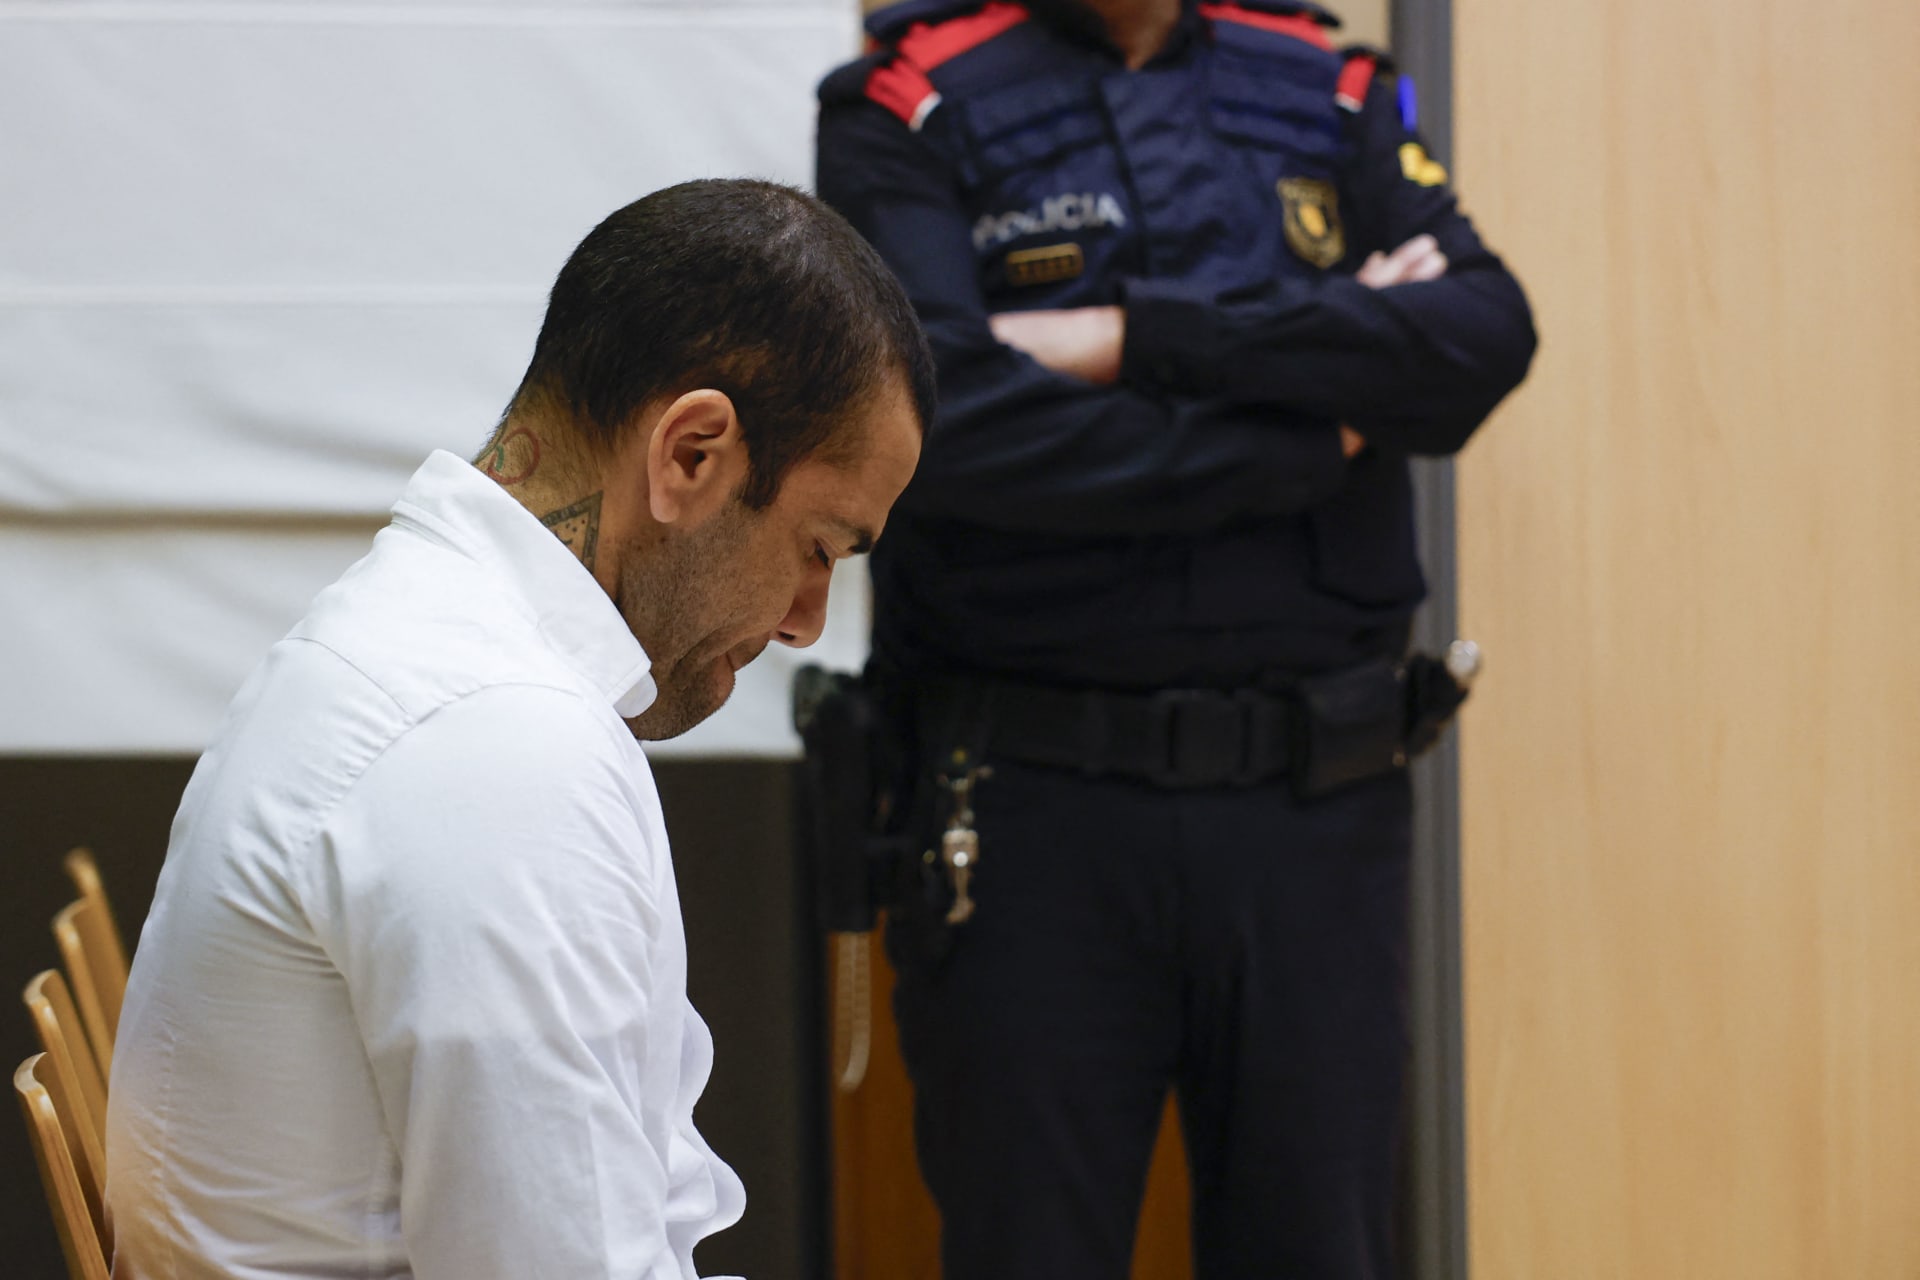 سُجن لإدانته بالاعتداء الجنسي.. إفراج مؤقت عن داني ألفيس بعد تسديده كفالة بقيمة مليون يورو